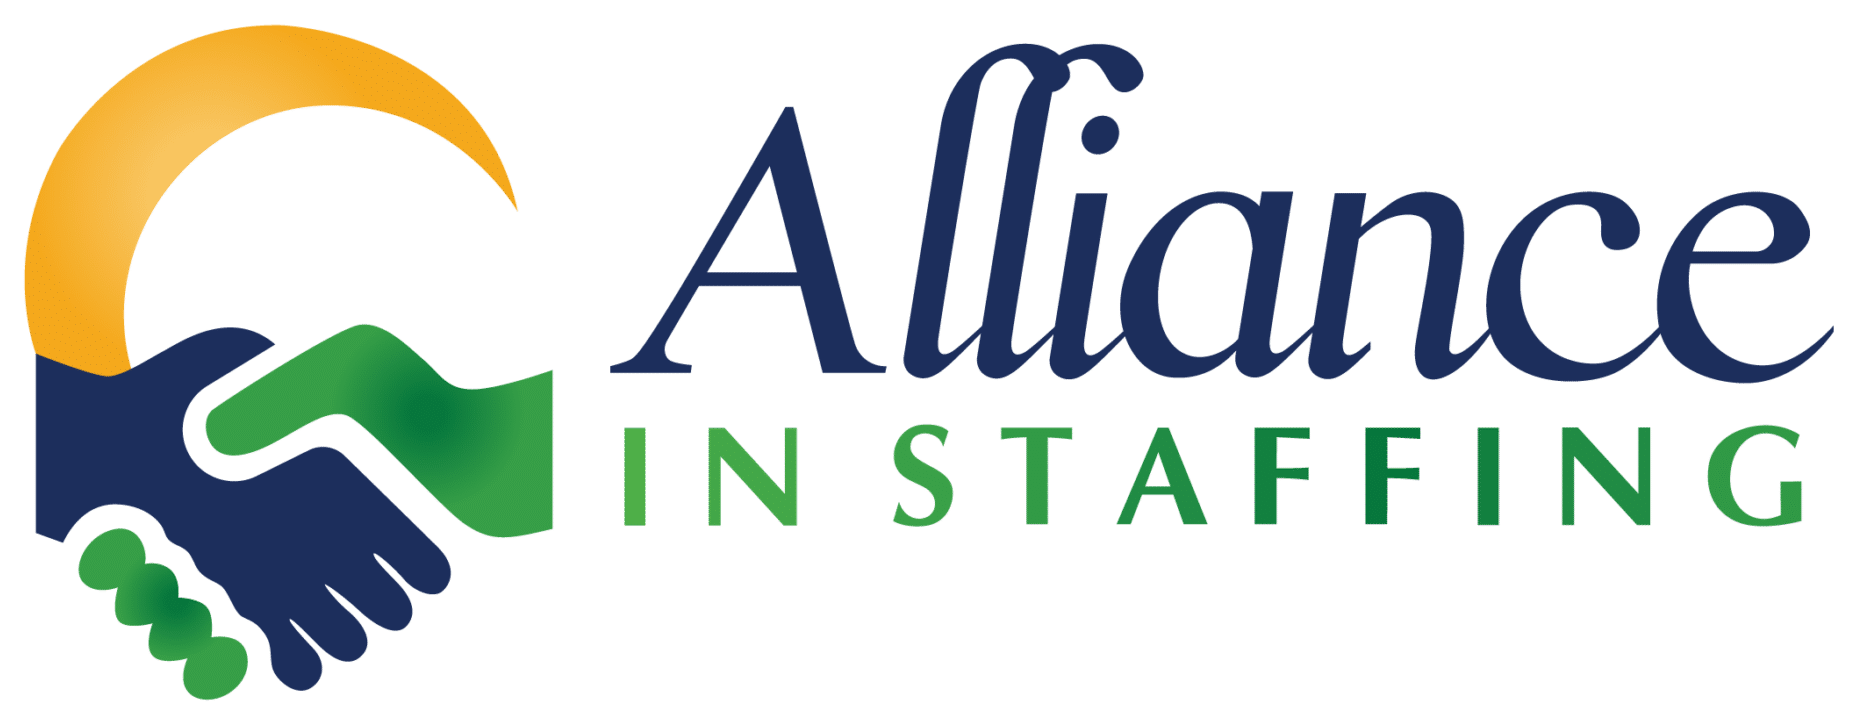 Alliance In Staffing